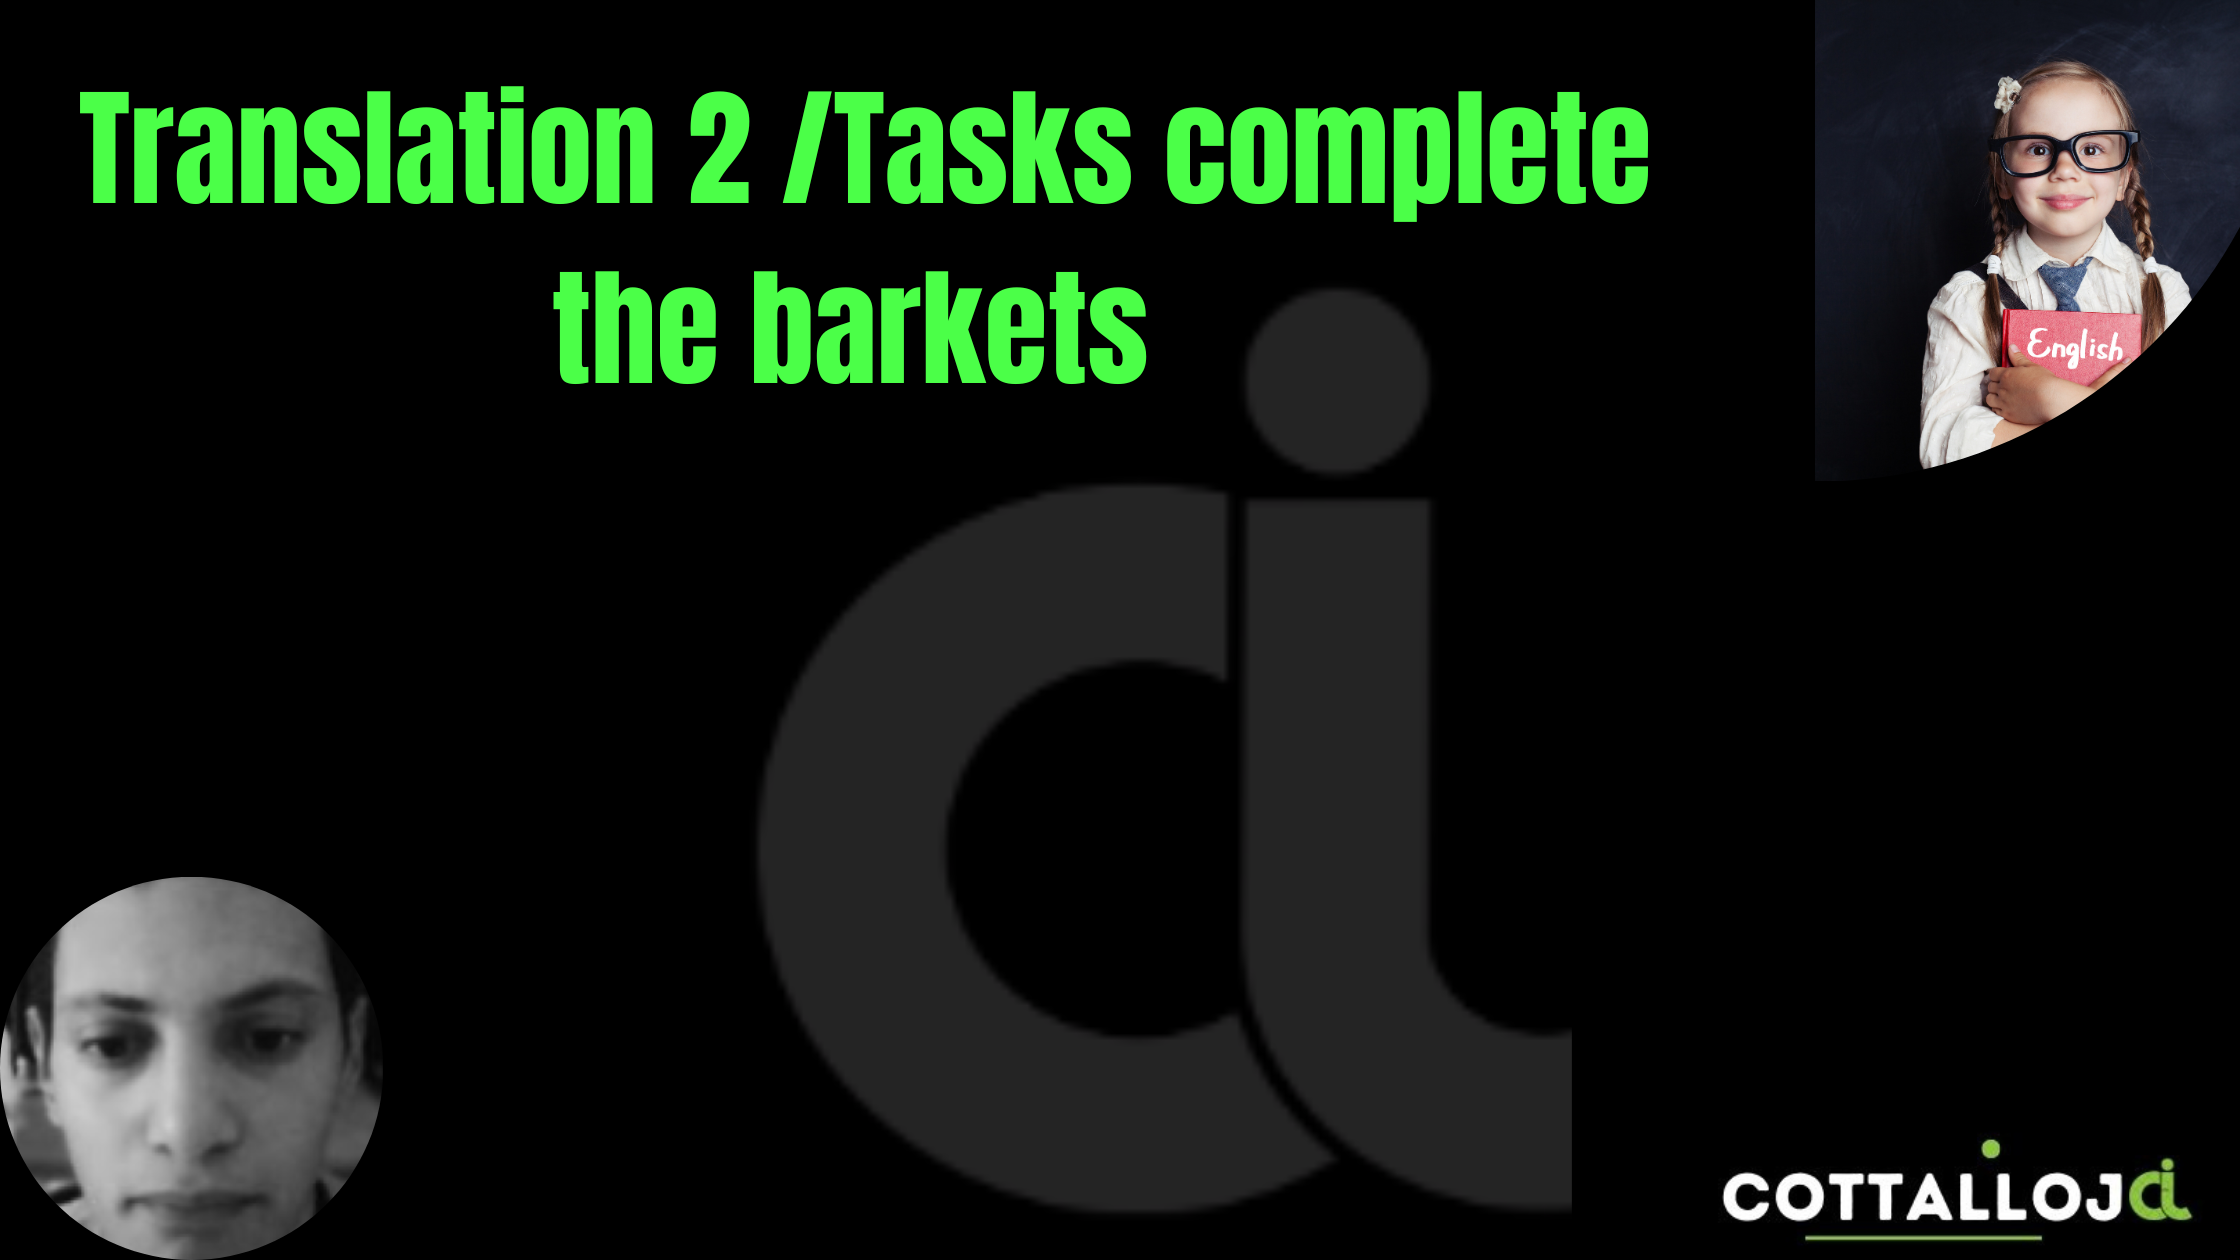 Translation Tasks complete the barkets